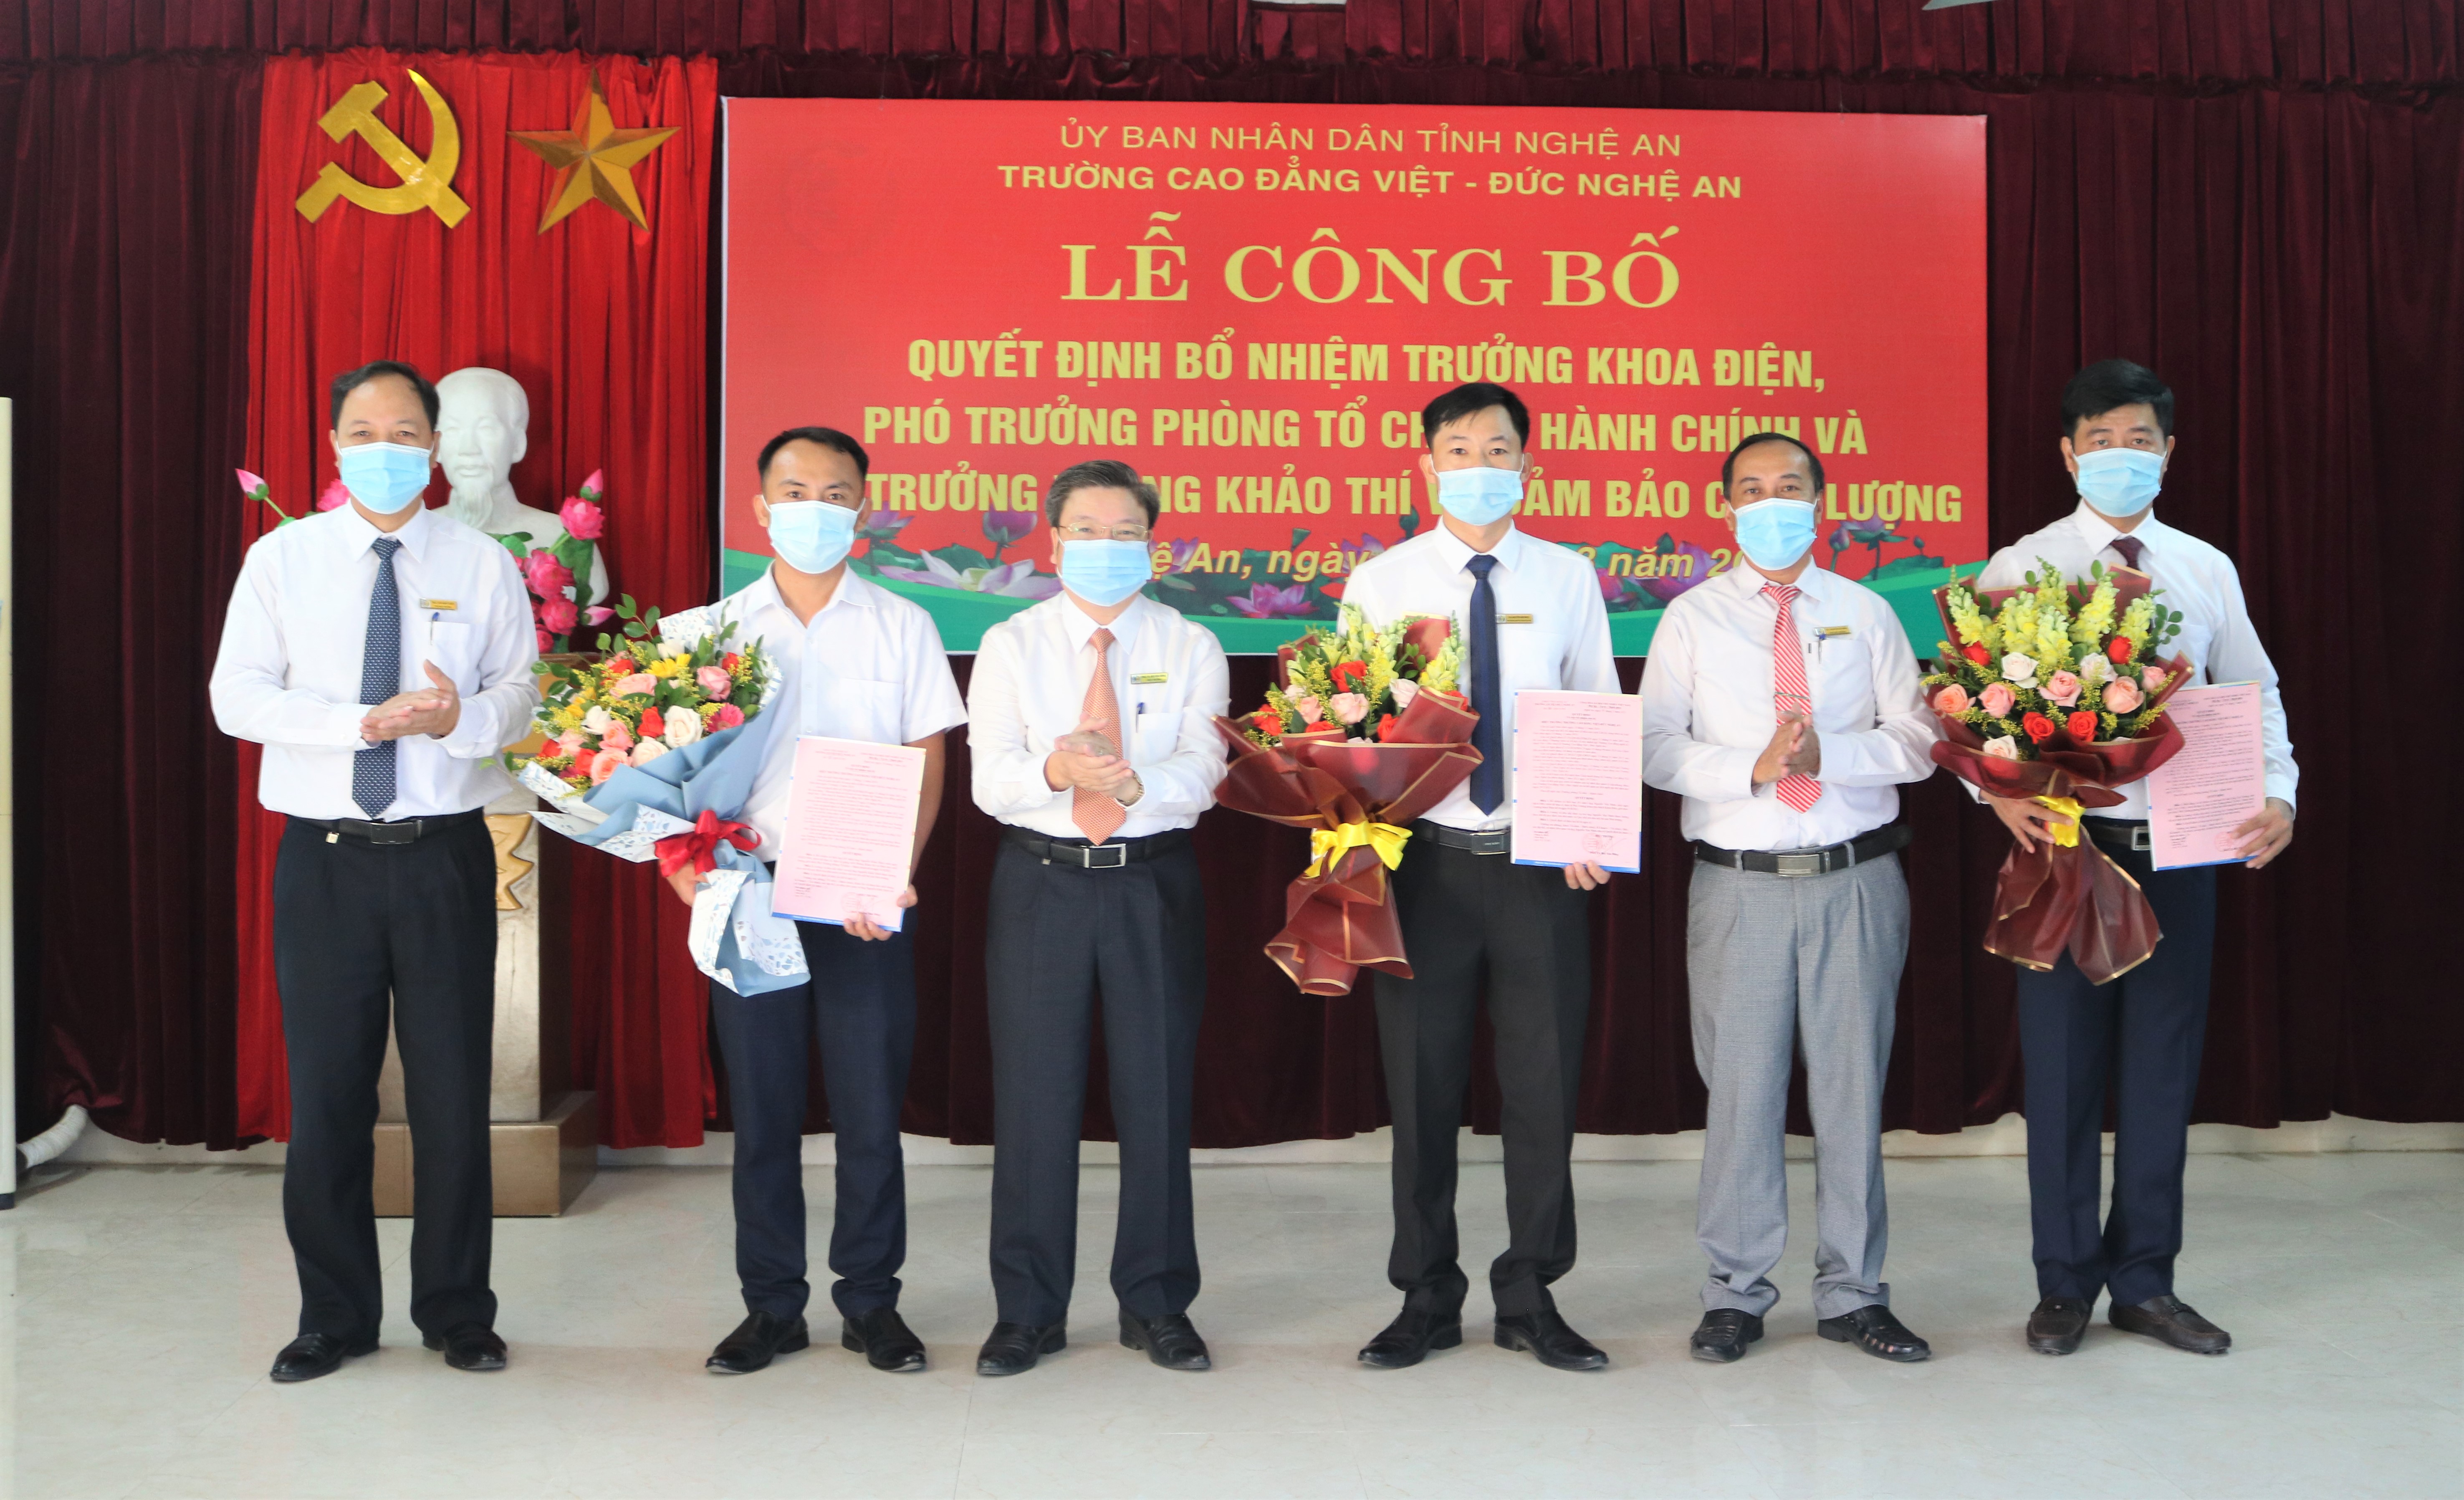 Trường Cao đẳng Việt – Đức Nghệ An tổ chức Lễ công bố quyết định về công tác cán bộ